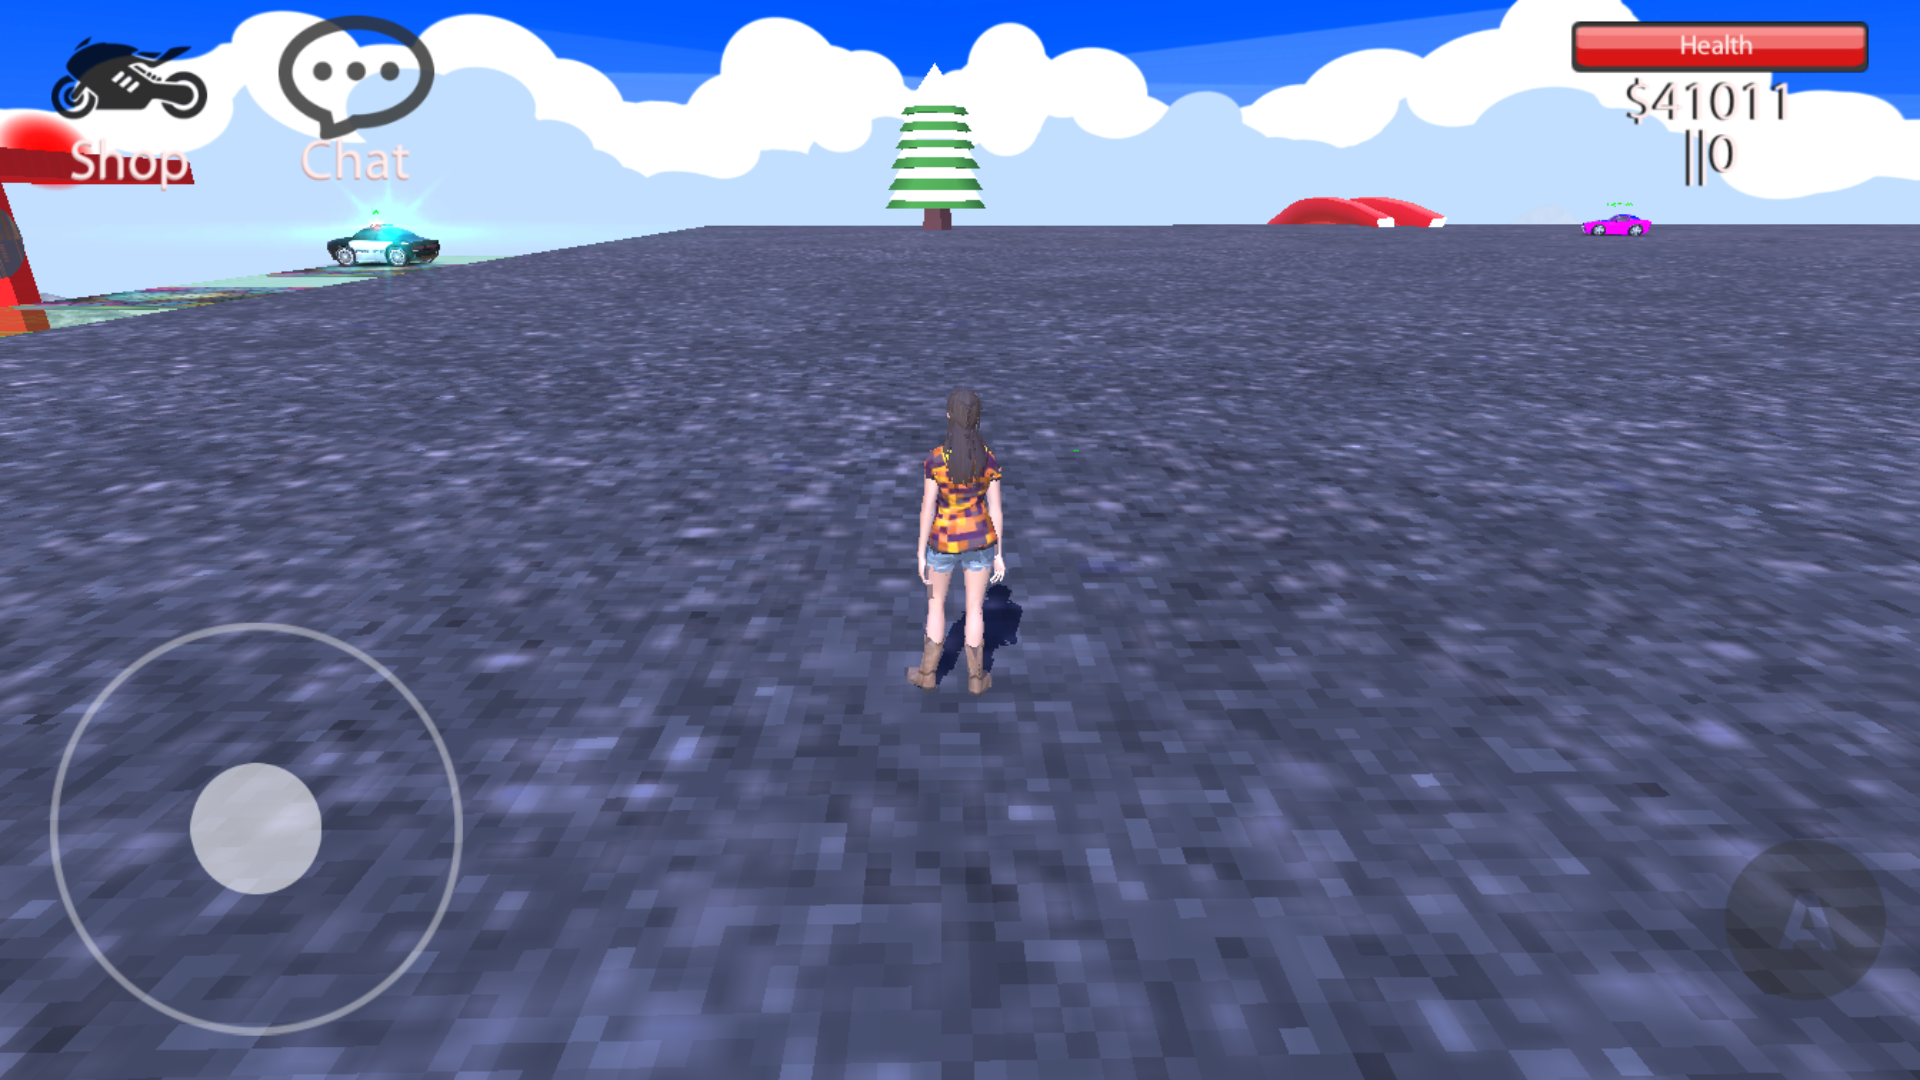 Freeroam City: Game estilo GTA tem modos online e offline (Android) -  Mobile Gamer